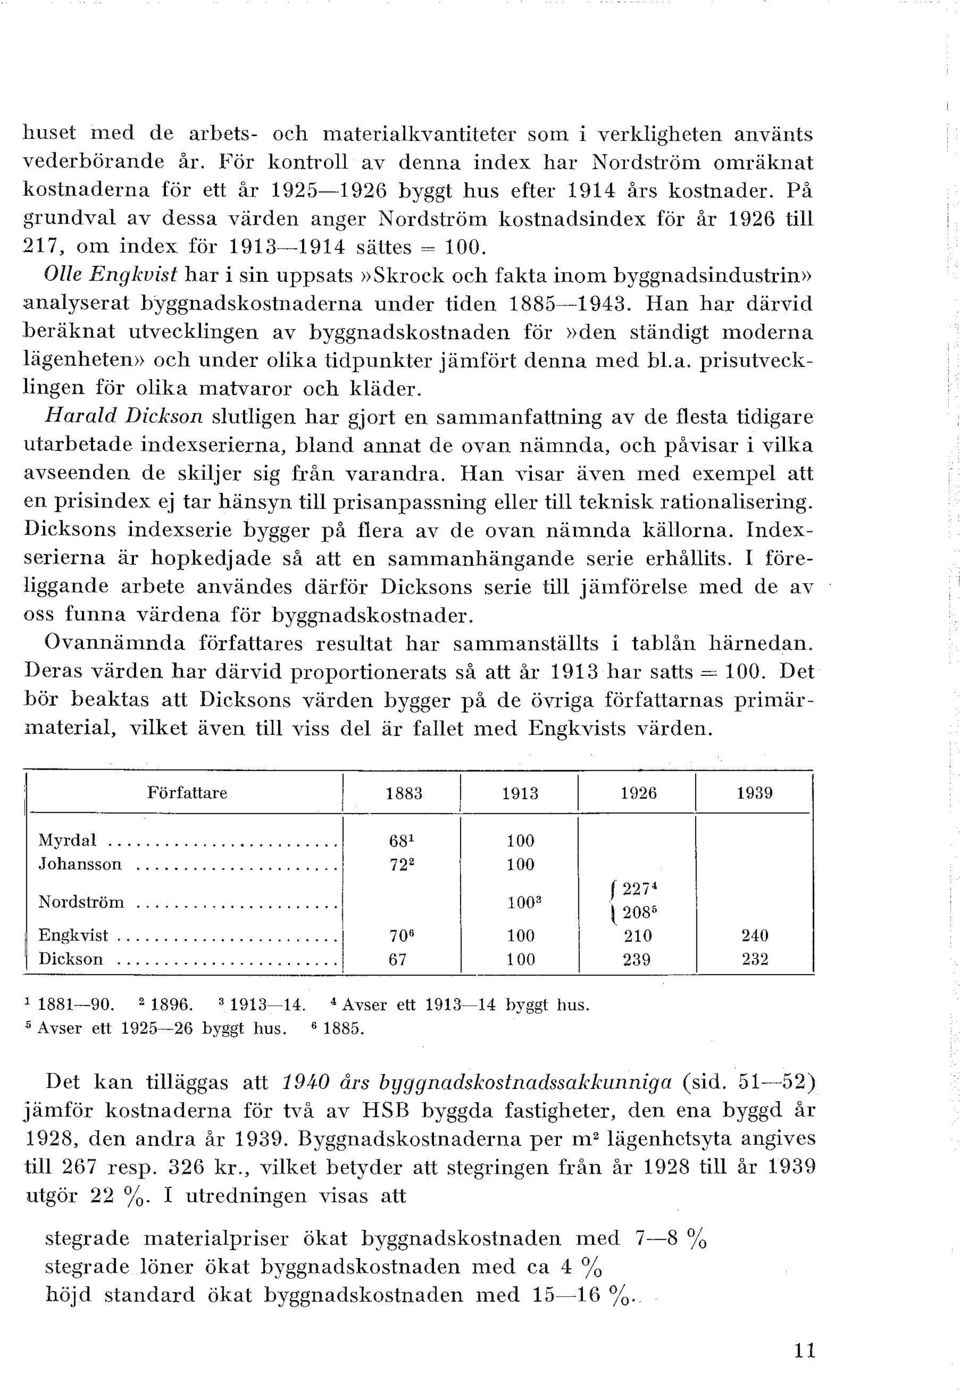 På grundva av dessa värden anger N ordström kostnadsindex för år 1926 ti 217, om index för 1913-1914 sättes= 100.